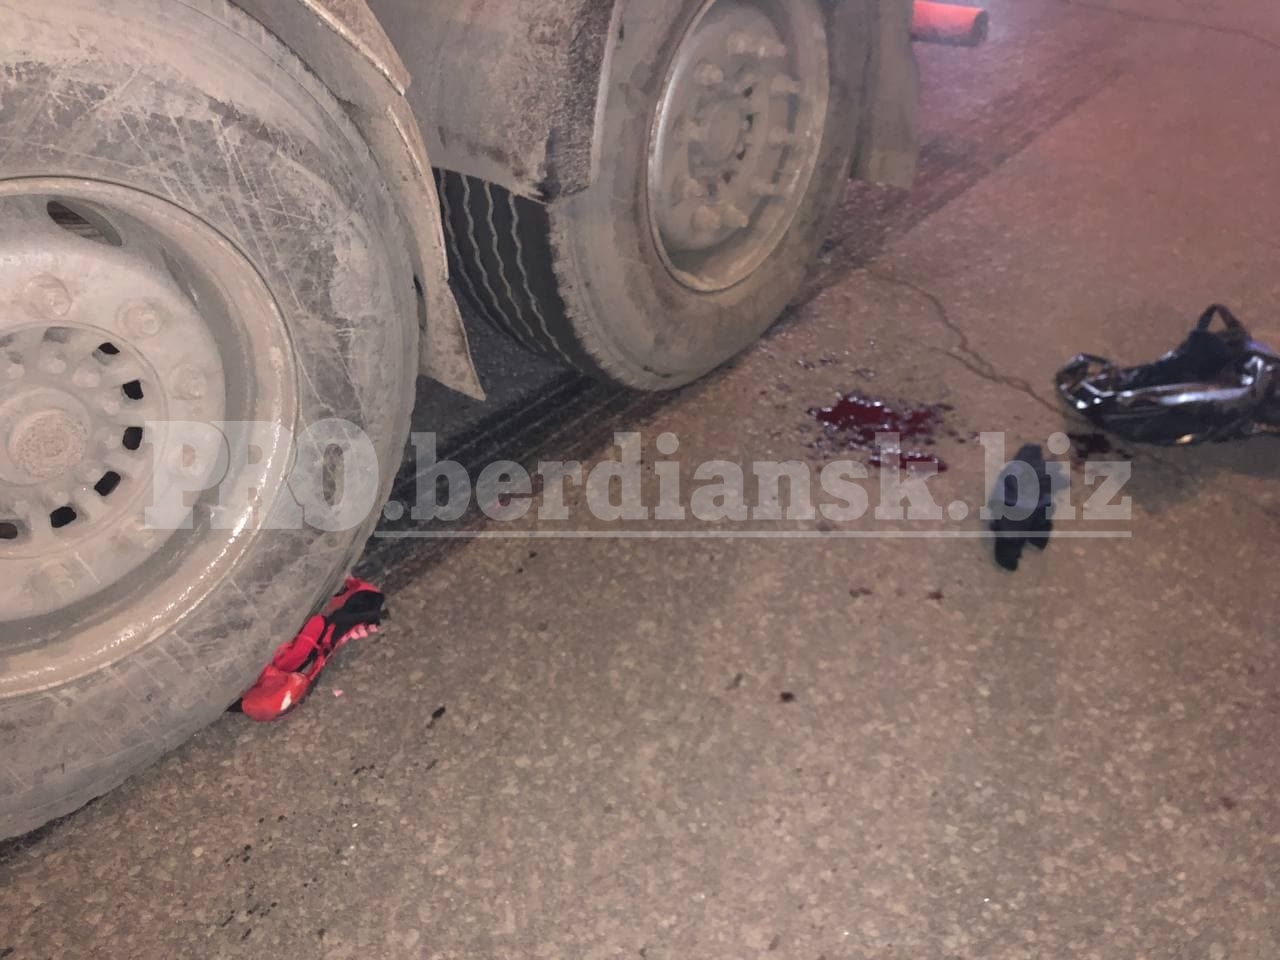 В Бердянске пьяный велосипедист угодил под колеса фуры (видео)